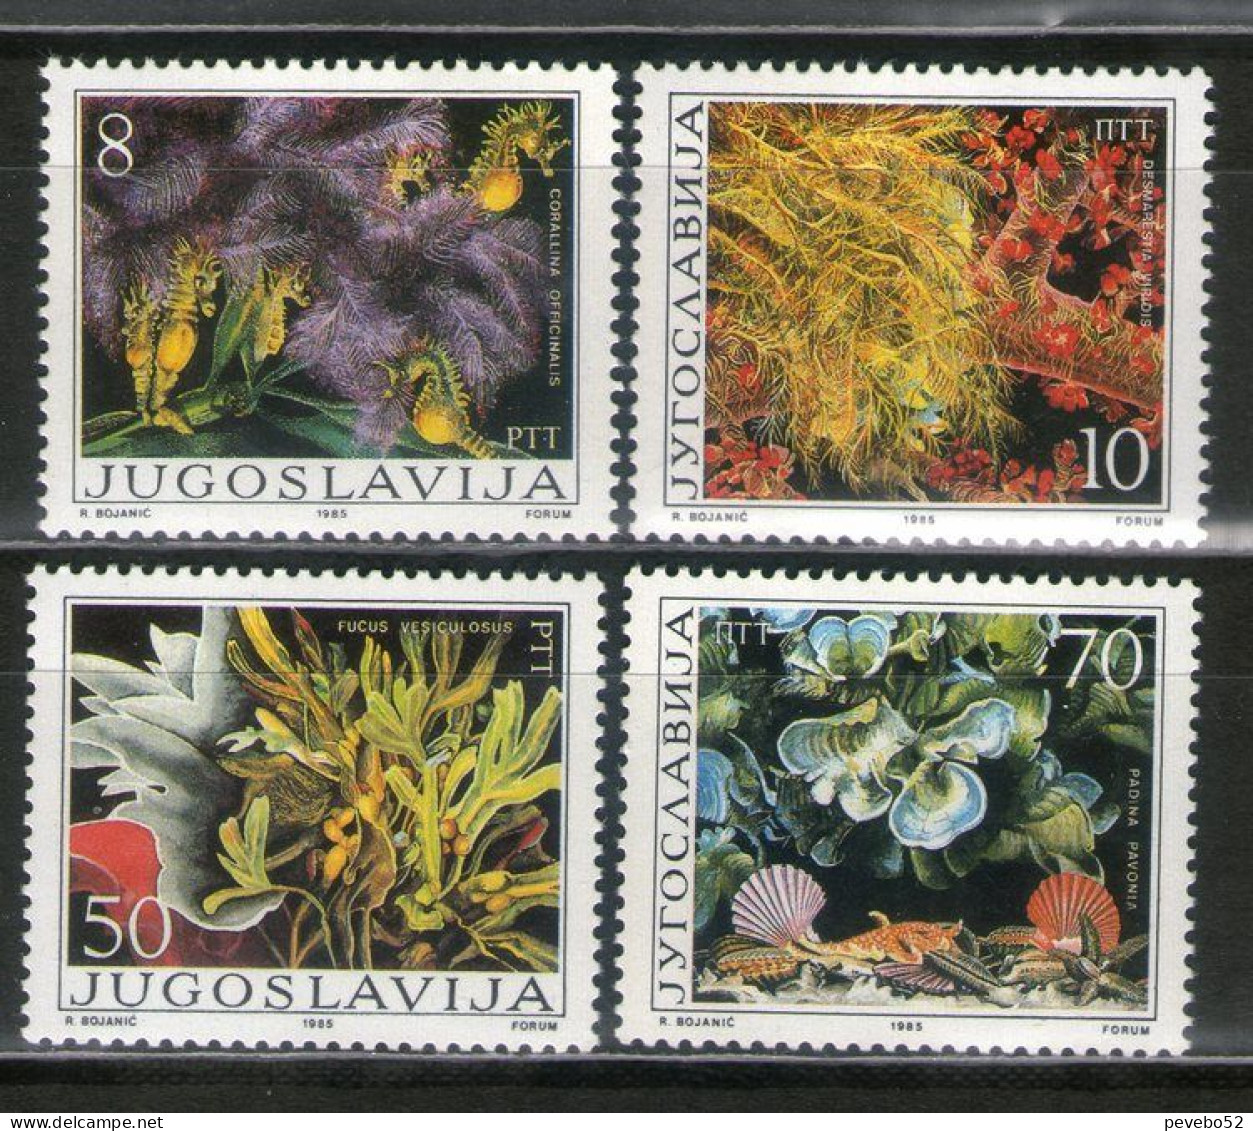 YUGOSLAVIA 1985 Flora - Seaweed & Algae MNH - Unused Stamps